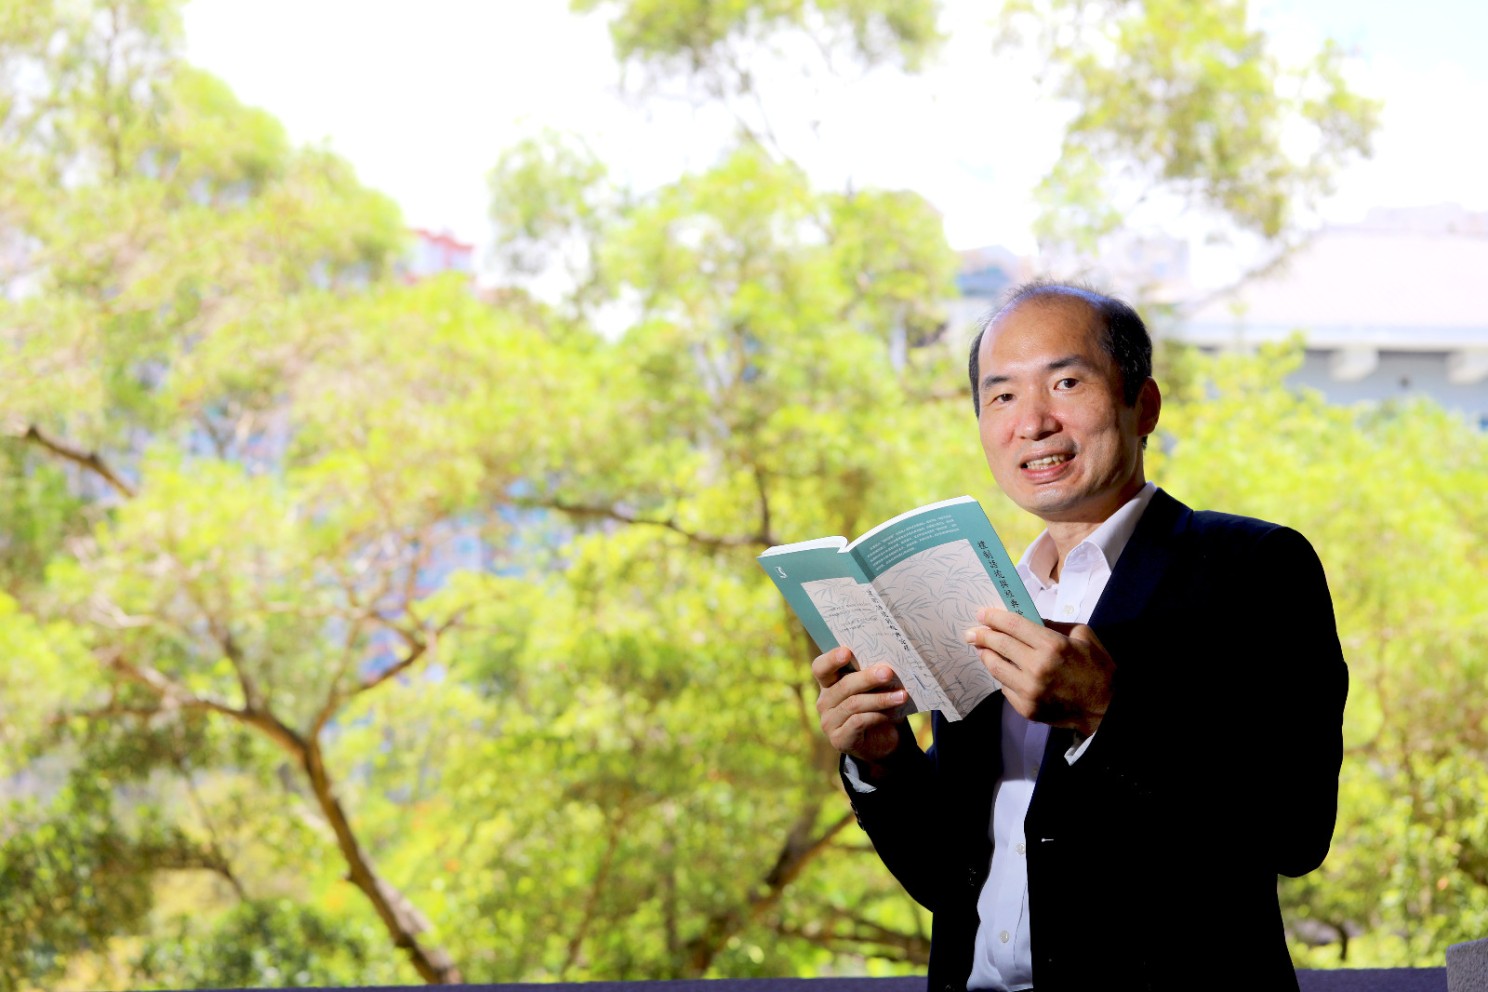 岭大中文系教授许子滨教授及其获奖著作《礼制语境与经典诠释》。